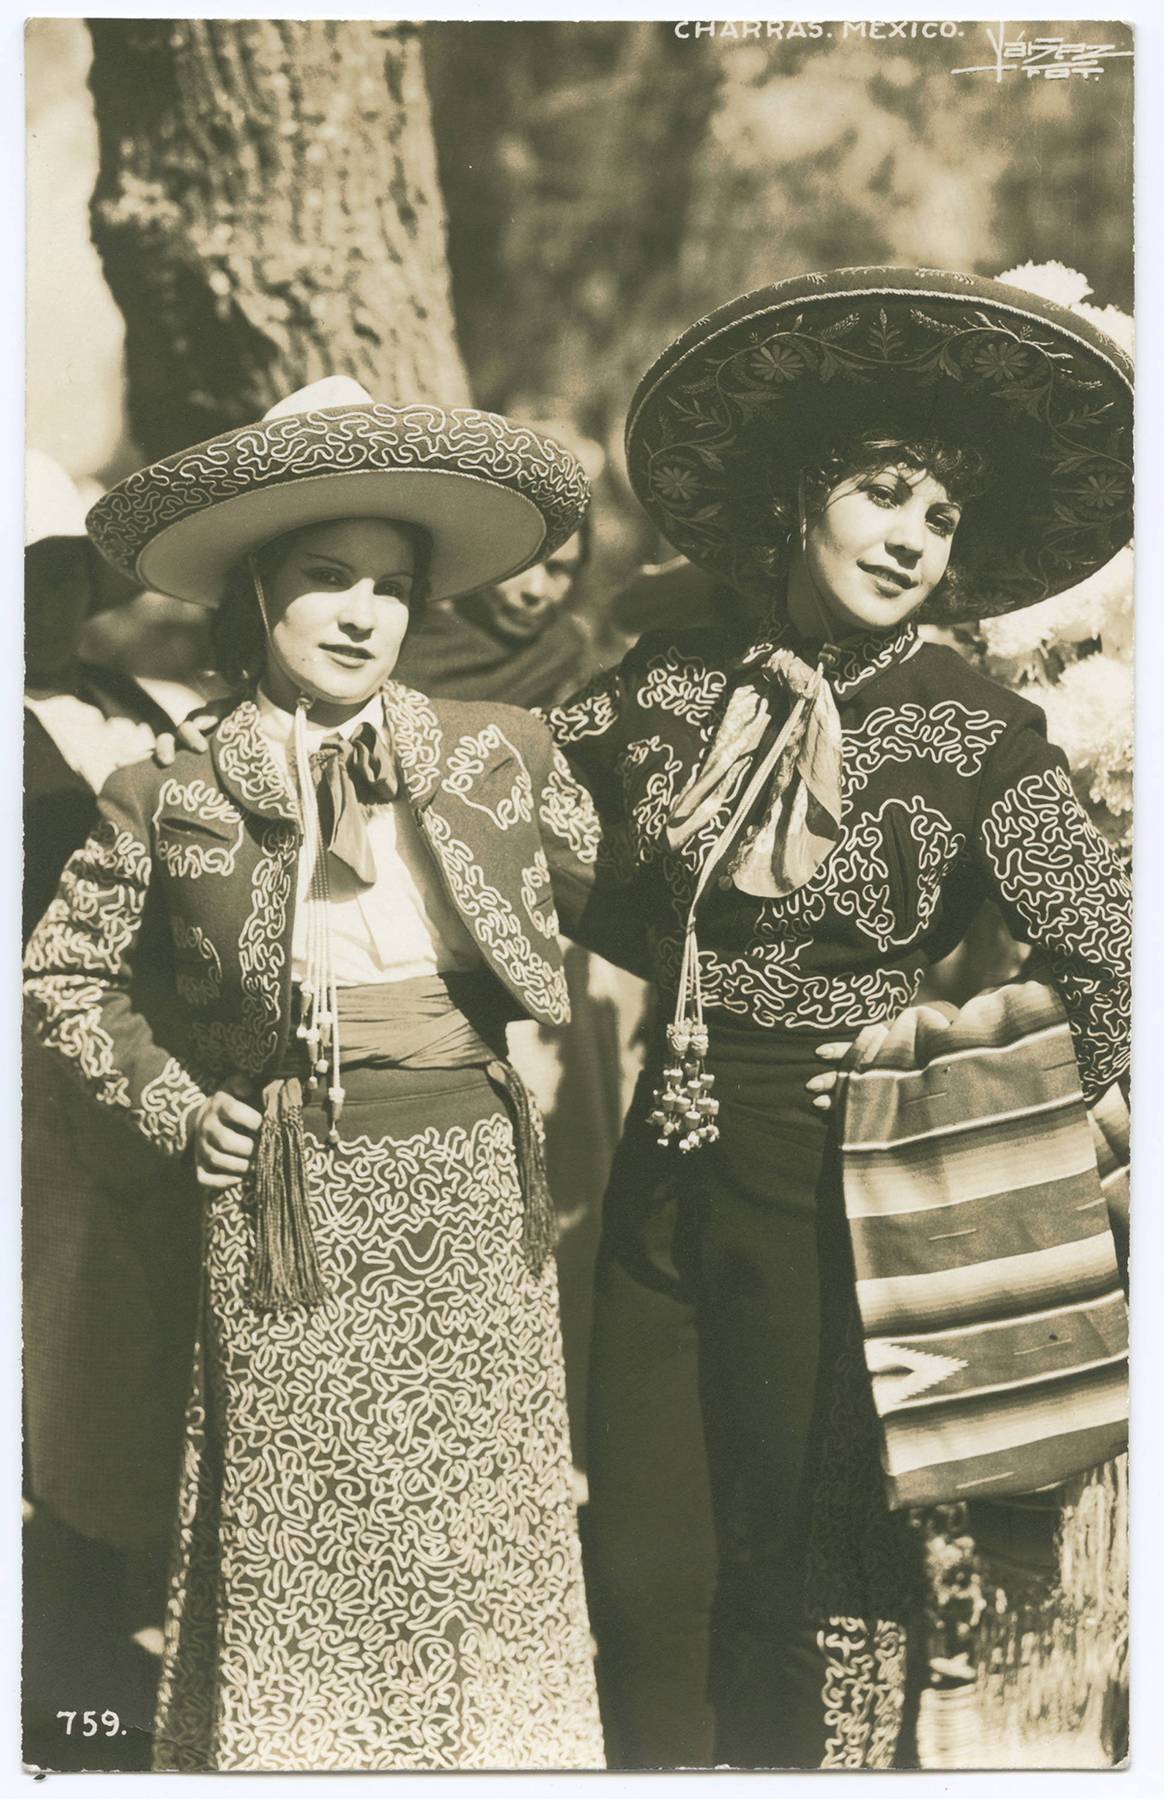 Photo Credits: Imagen e identidad: la moda mexicana en el período moderno. Cortesía del Museo del Traje de Madrid.